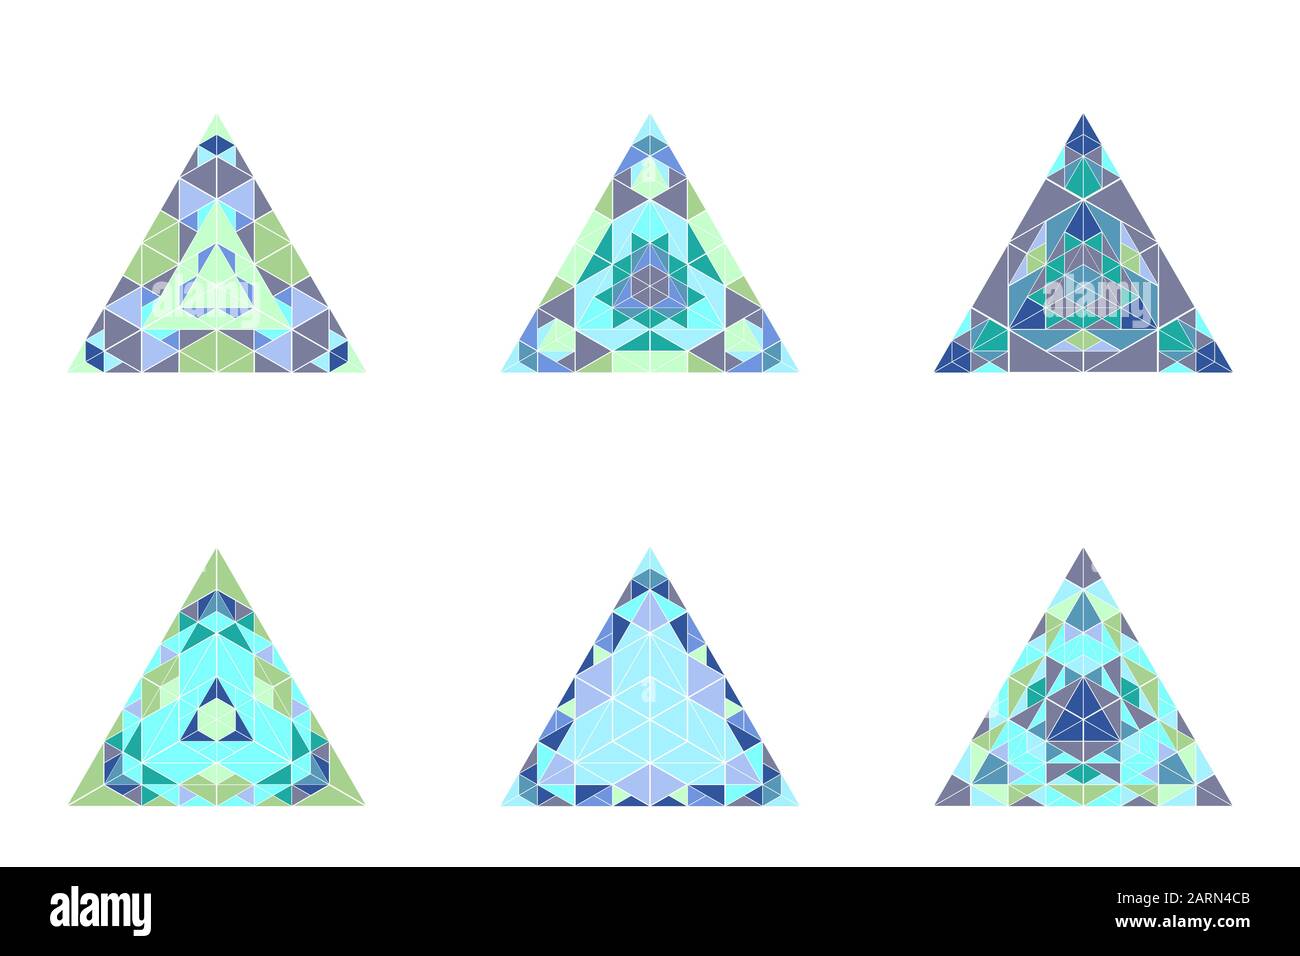 Isoliertes, verziertes Formset - geometrische, bunte geometrische Vektorgrafikelemente aus Dreieckskacheln Stock Vektor